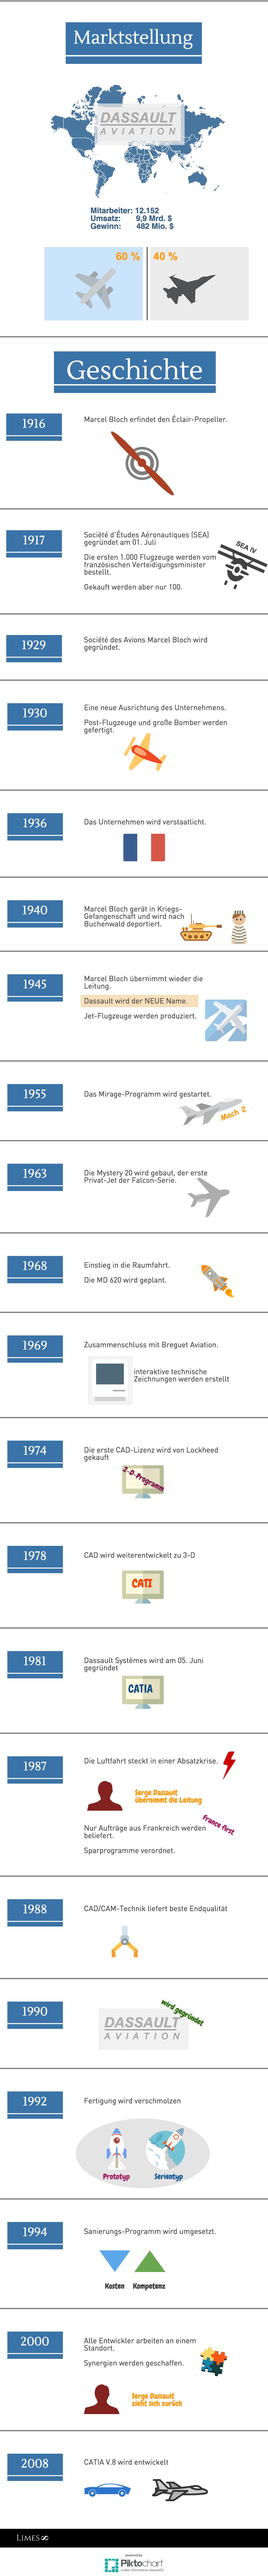 Informationsgrafik zum Unternehmen Dassault